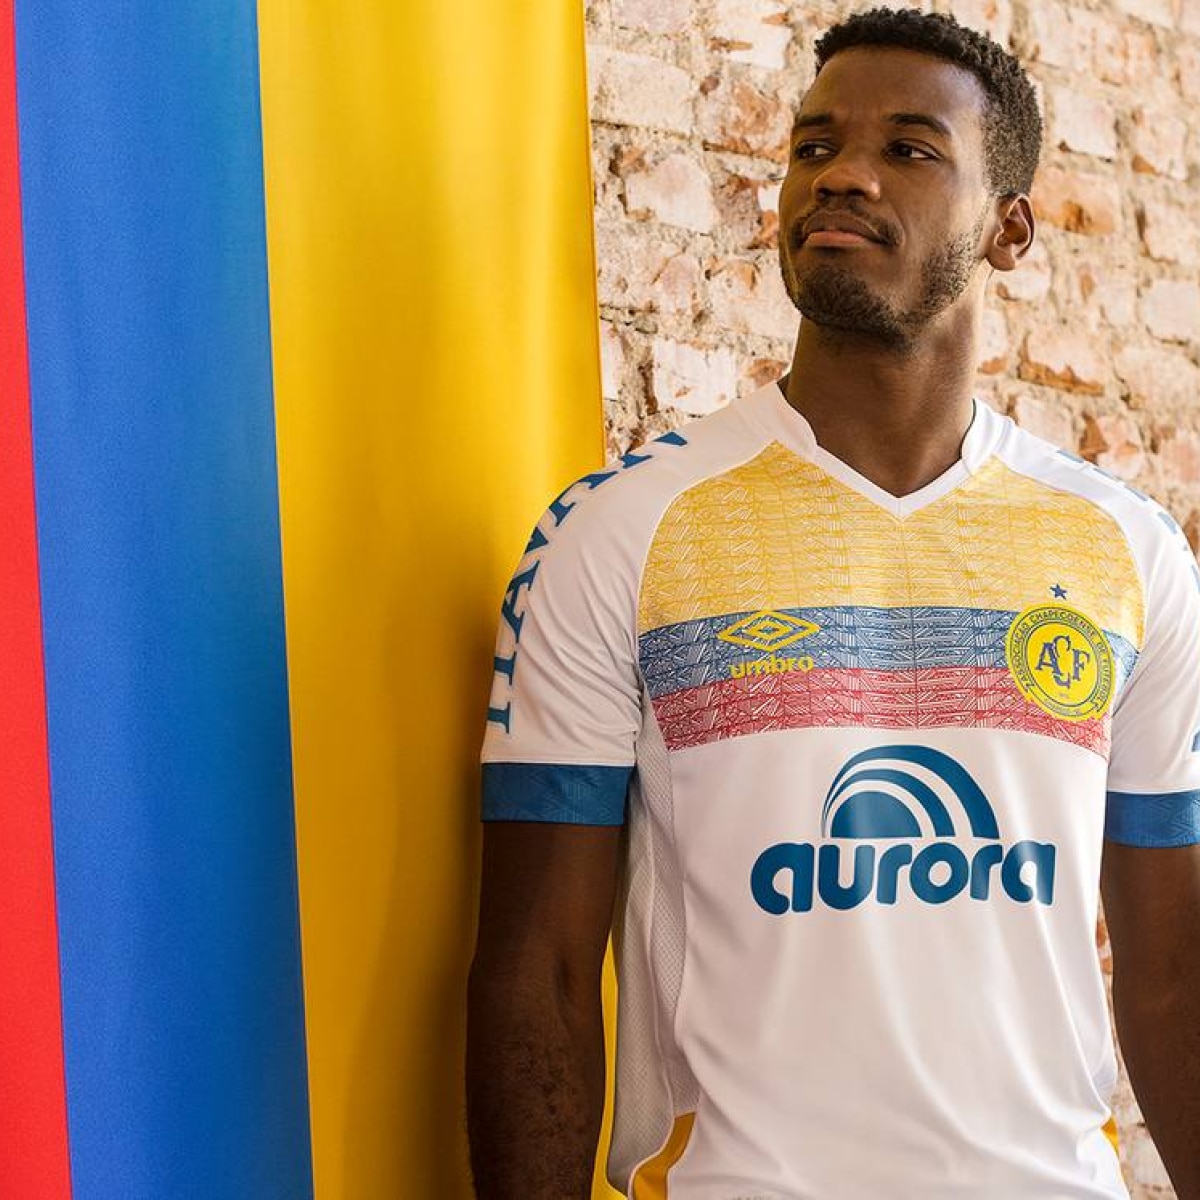 Com camisa em homenagem à Chapecoense, Monteiro vence Rogerinho em